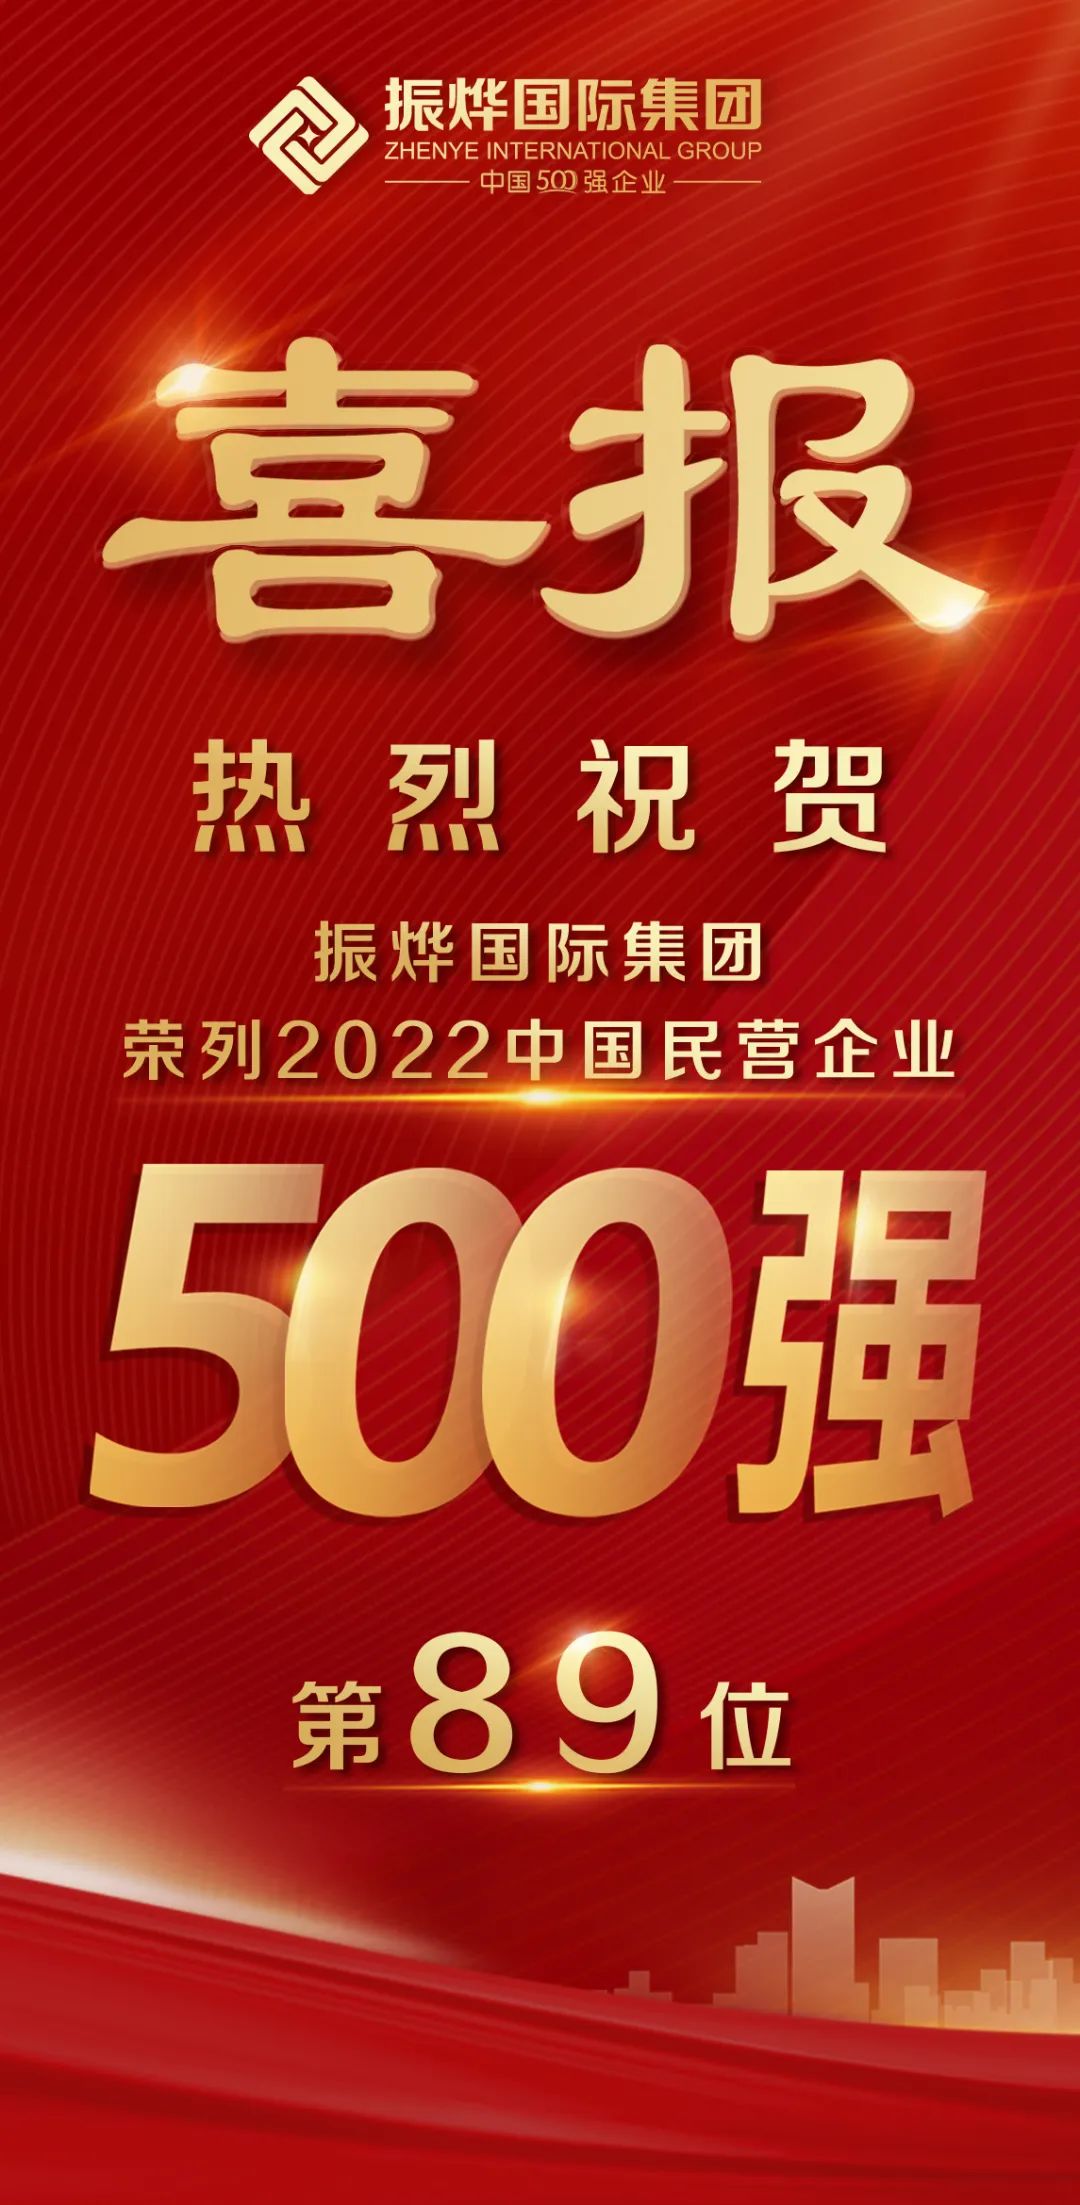 喜报！振烨国际集团荣列2022中国民营企业500强第89位